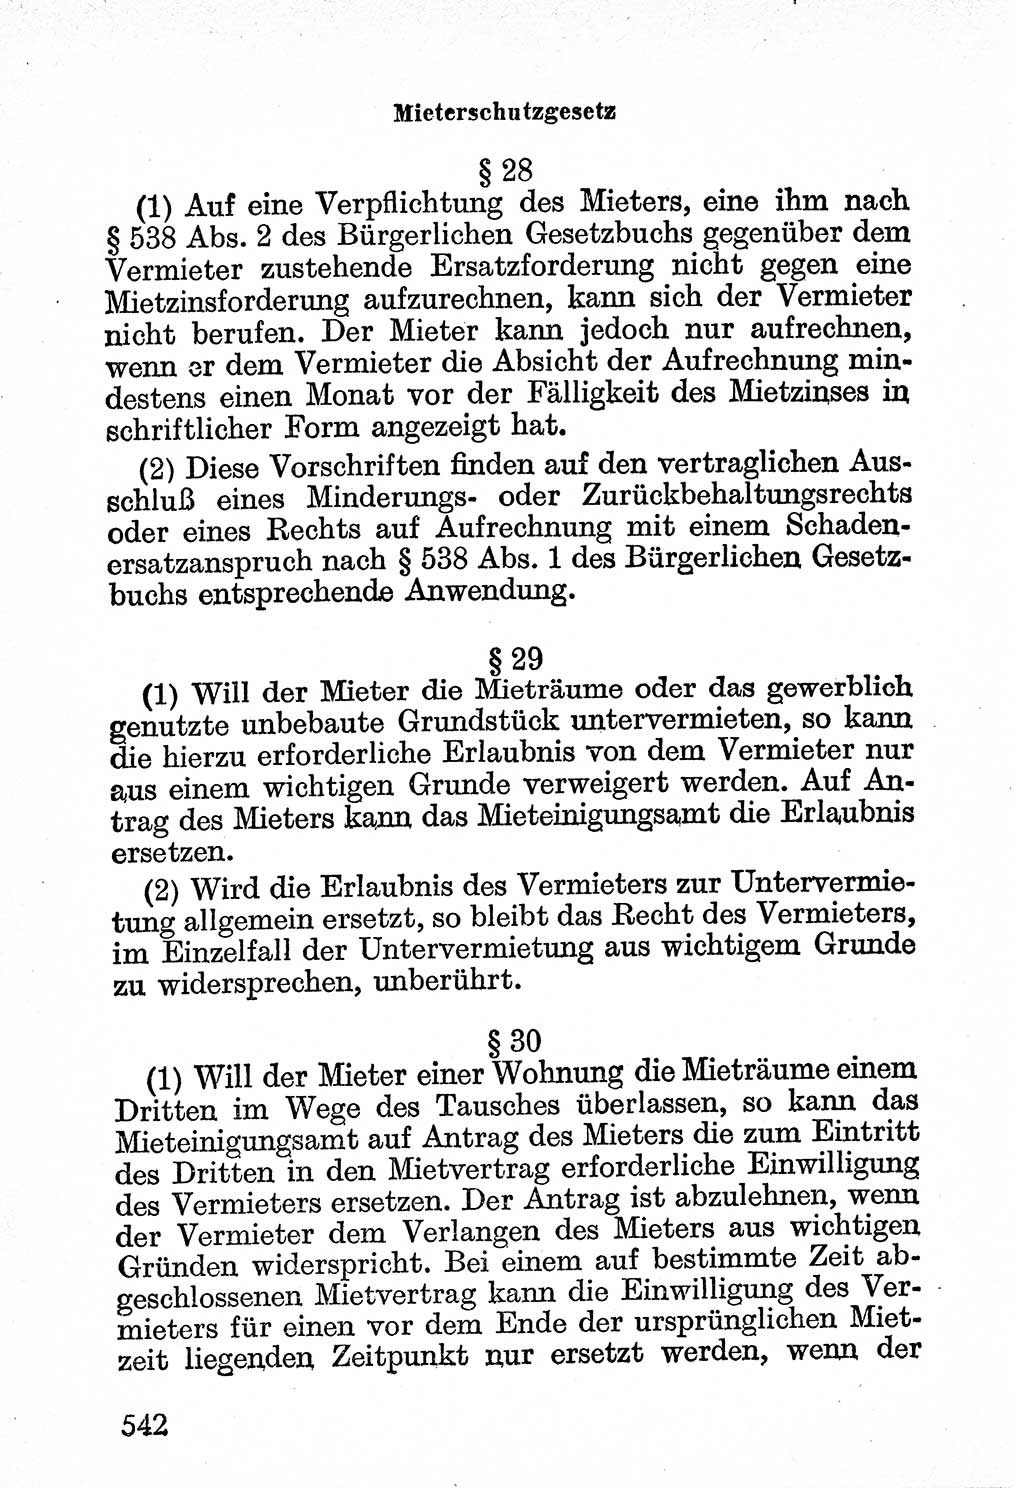 Bürgerliches Gesetzbuch (BGB) nebst wichtigen Nebengesetzen [Deutsche Demokratische Republik (DDR)] 1956, Seite 542 (BGB Nebenges. DDR 1956, S. 542)